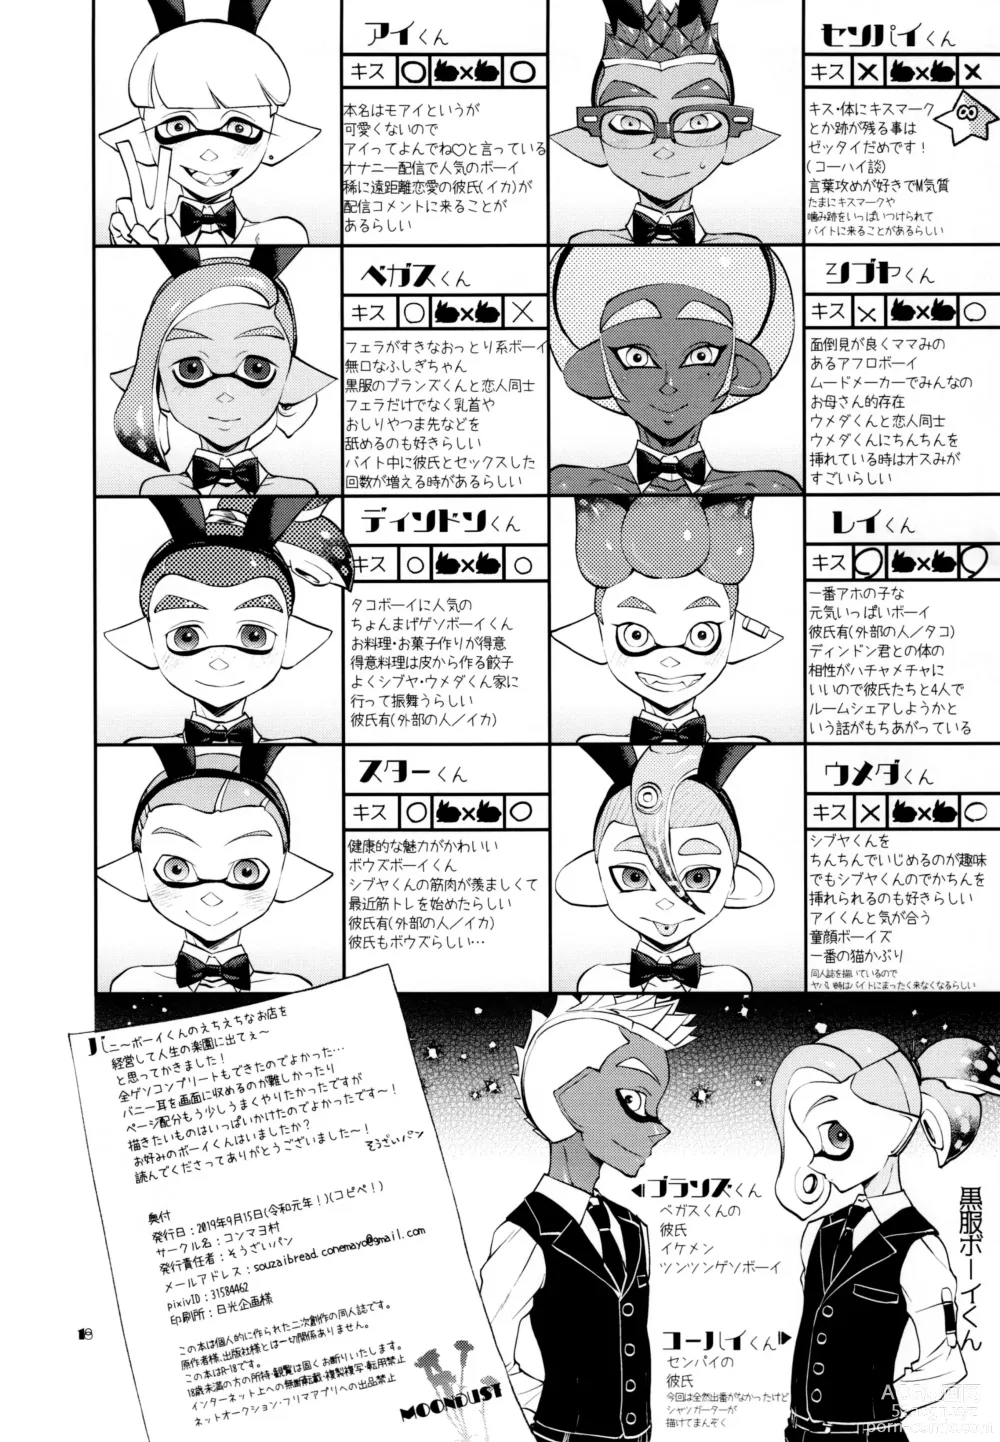 Page 18 of doujinshi Bunny no Ikagawashii Omise